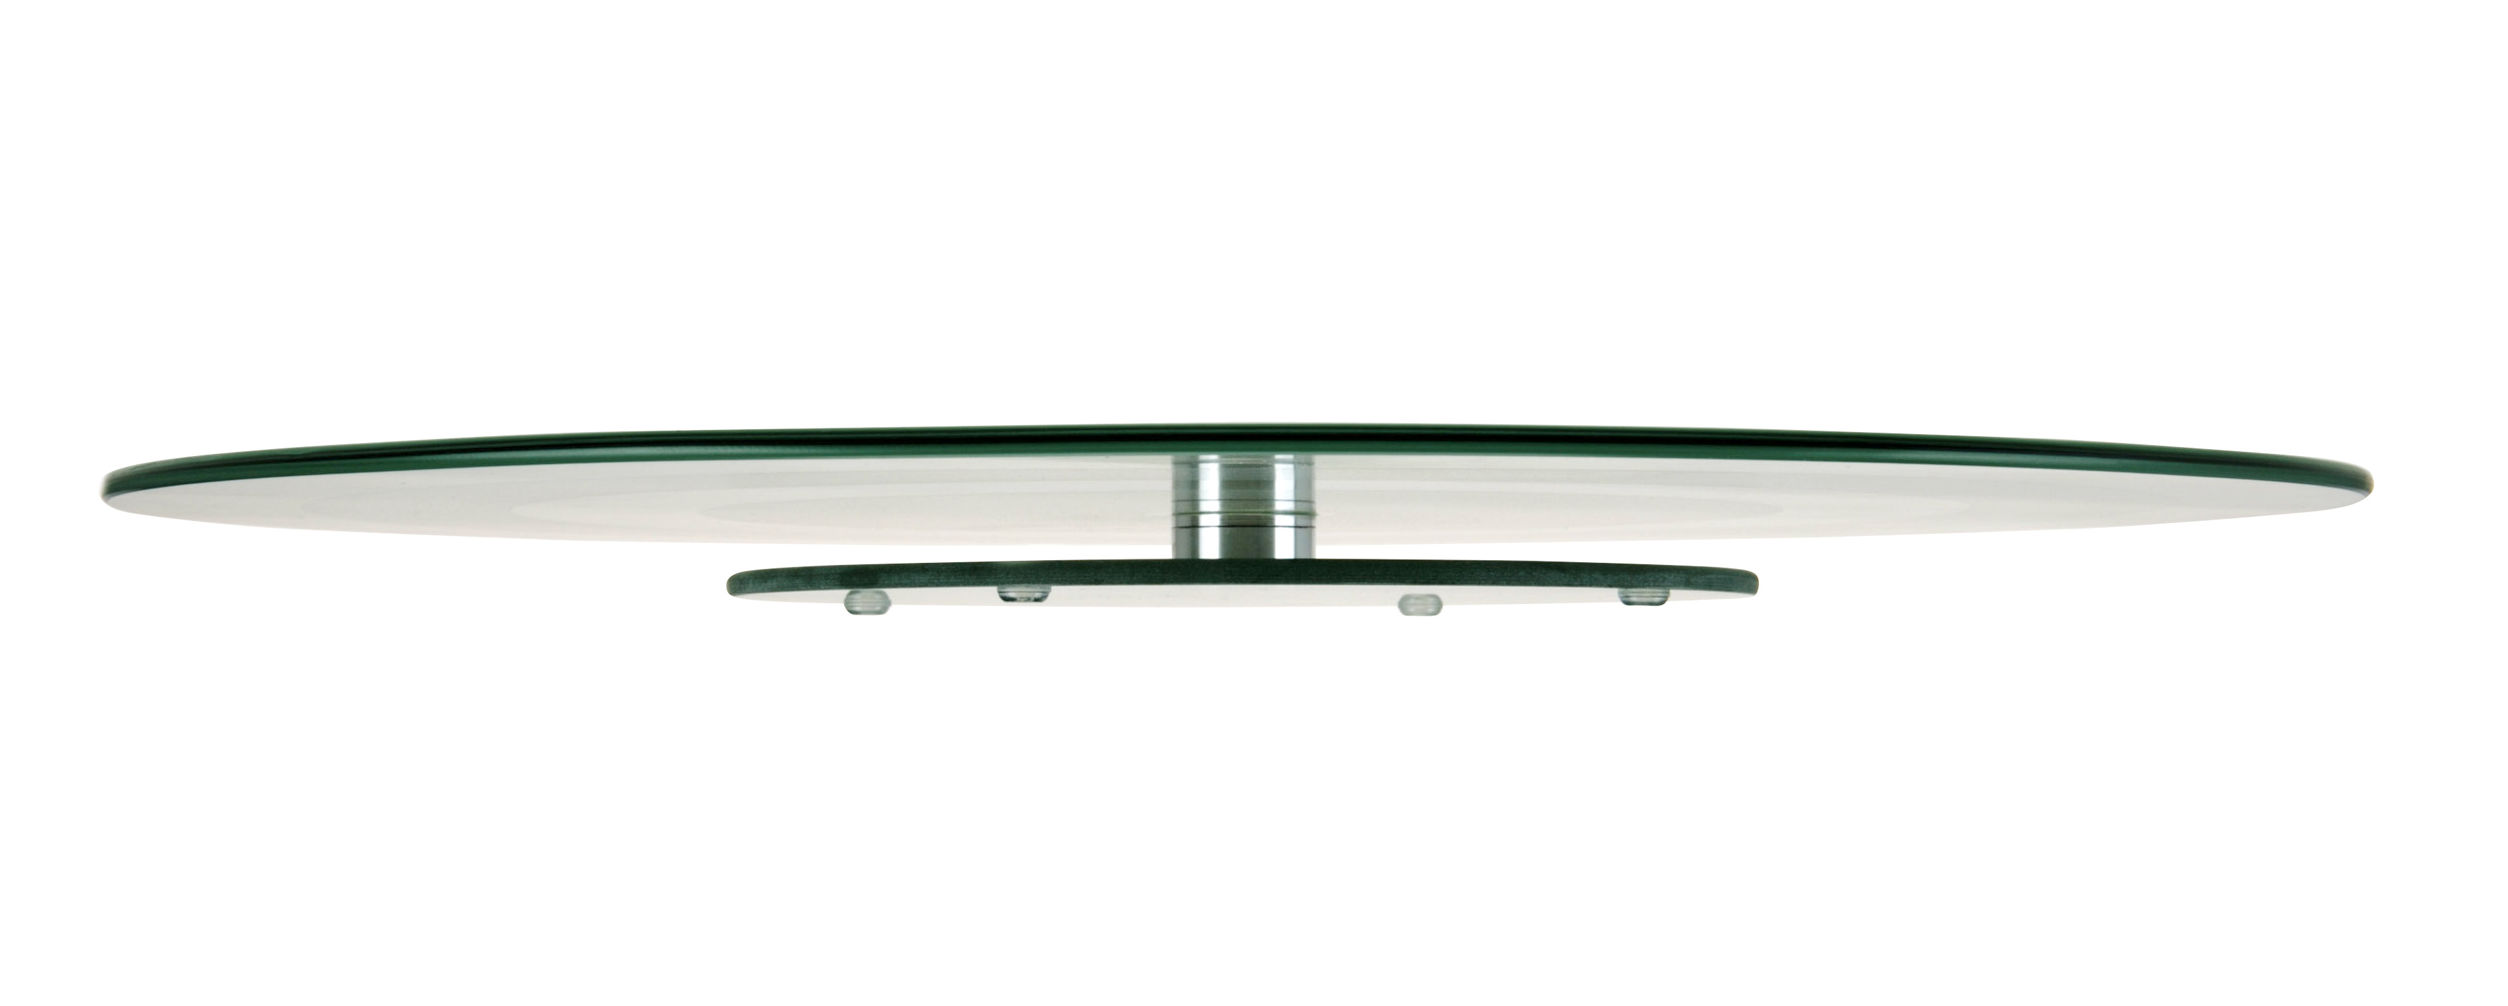 Käseplatte XXL aus Glas - Ø 45 cm - Servierplatte rund drehbar 